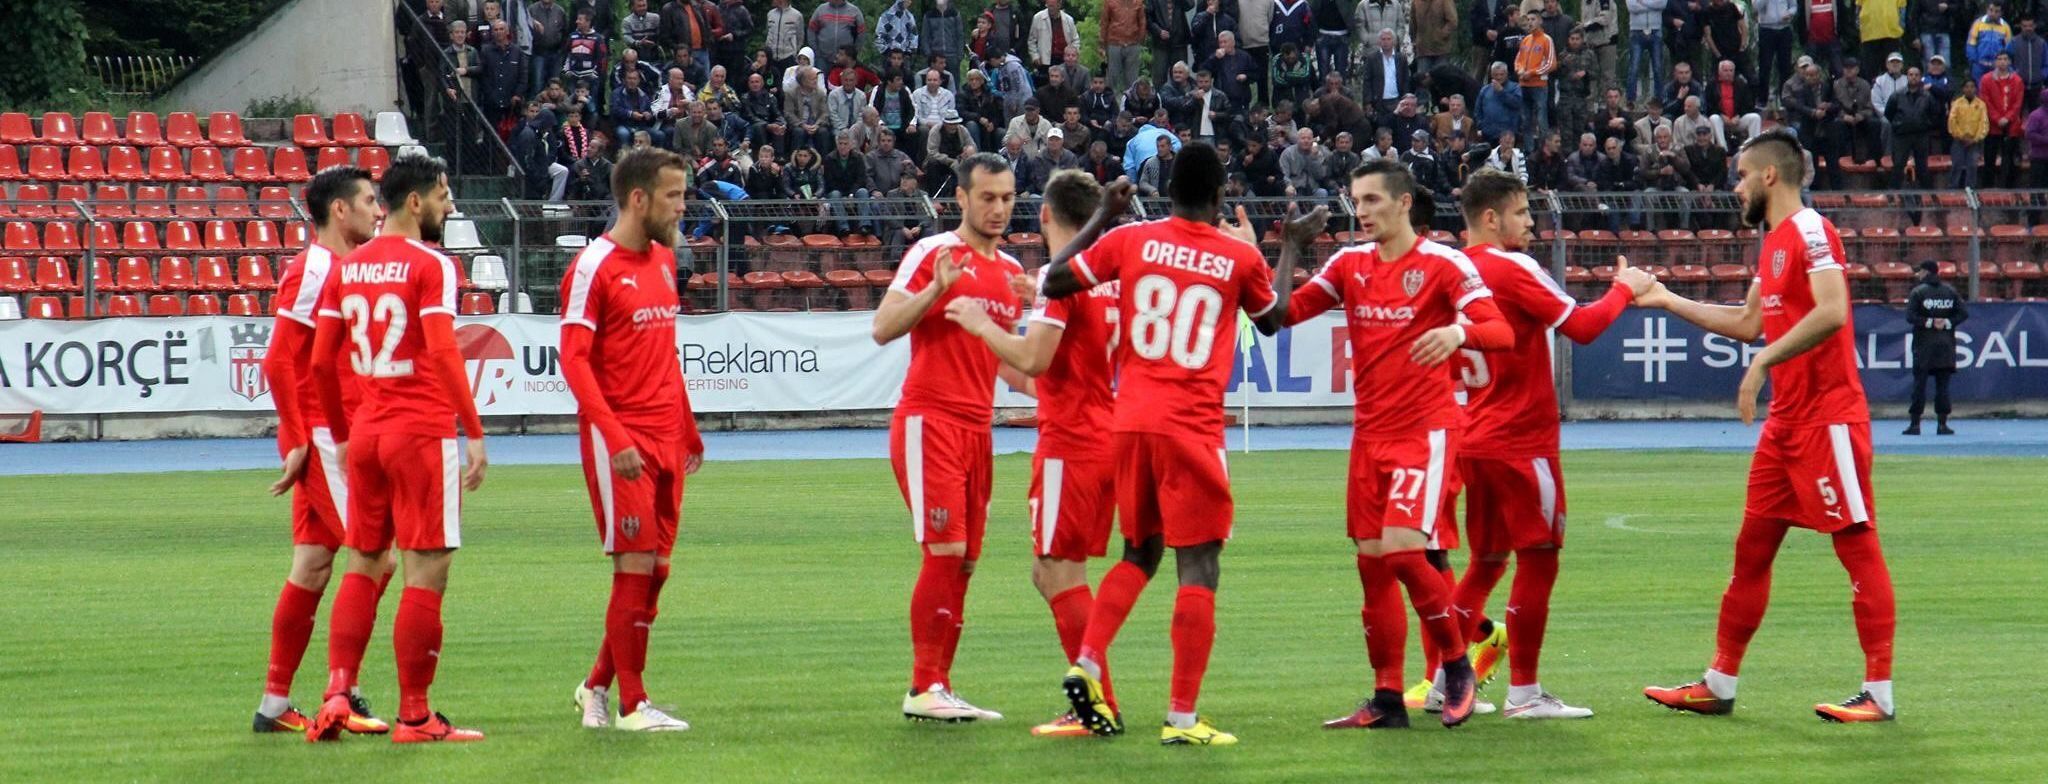 Албанский клуб лишили титула чемпиона из-за договорных матчей